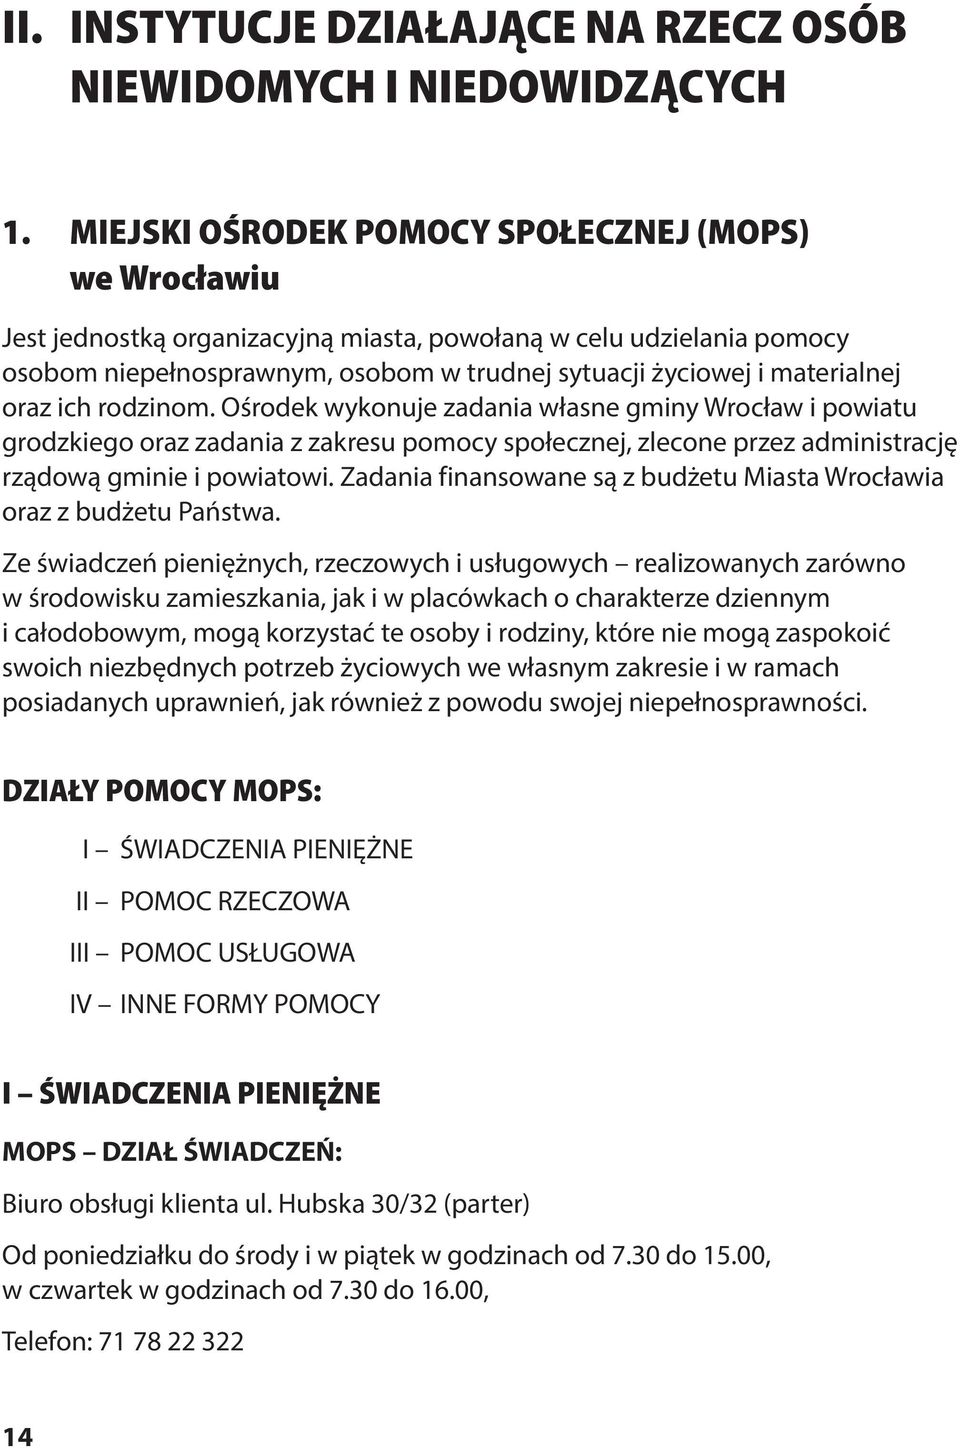 oraz ich rodzinom. Ośrodek wykonuje zadania własne gminy Wrocław i powiatu grodzkiego oraz zadania z zakresu pomocy społecznej, zlecone przez administrację rządową gminie i powiatowi.